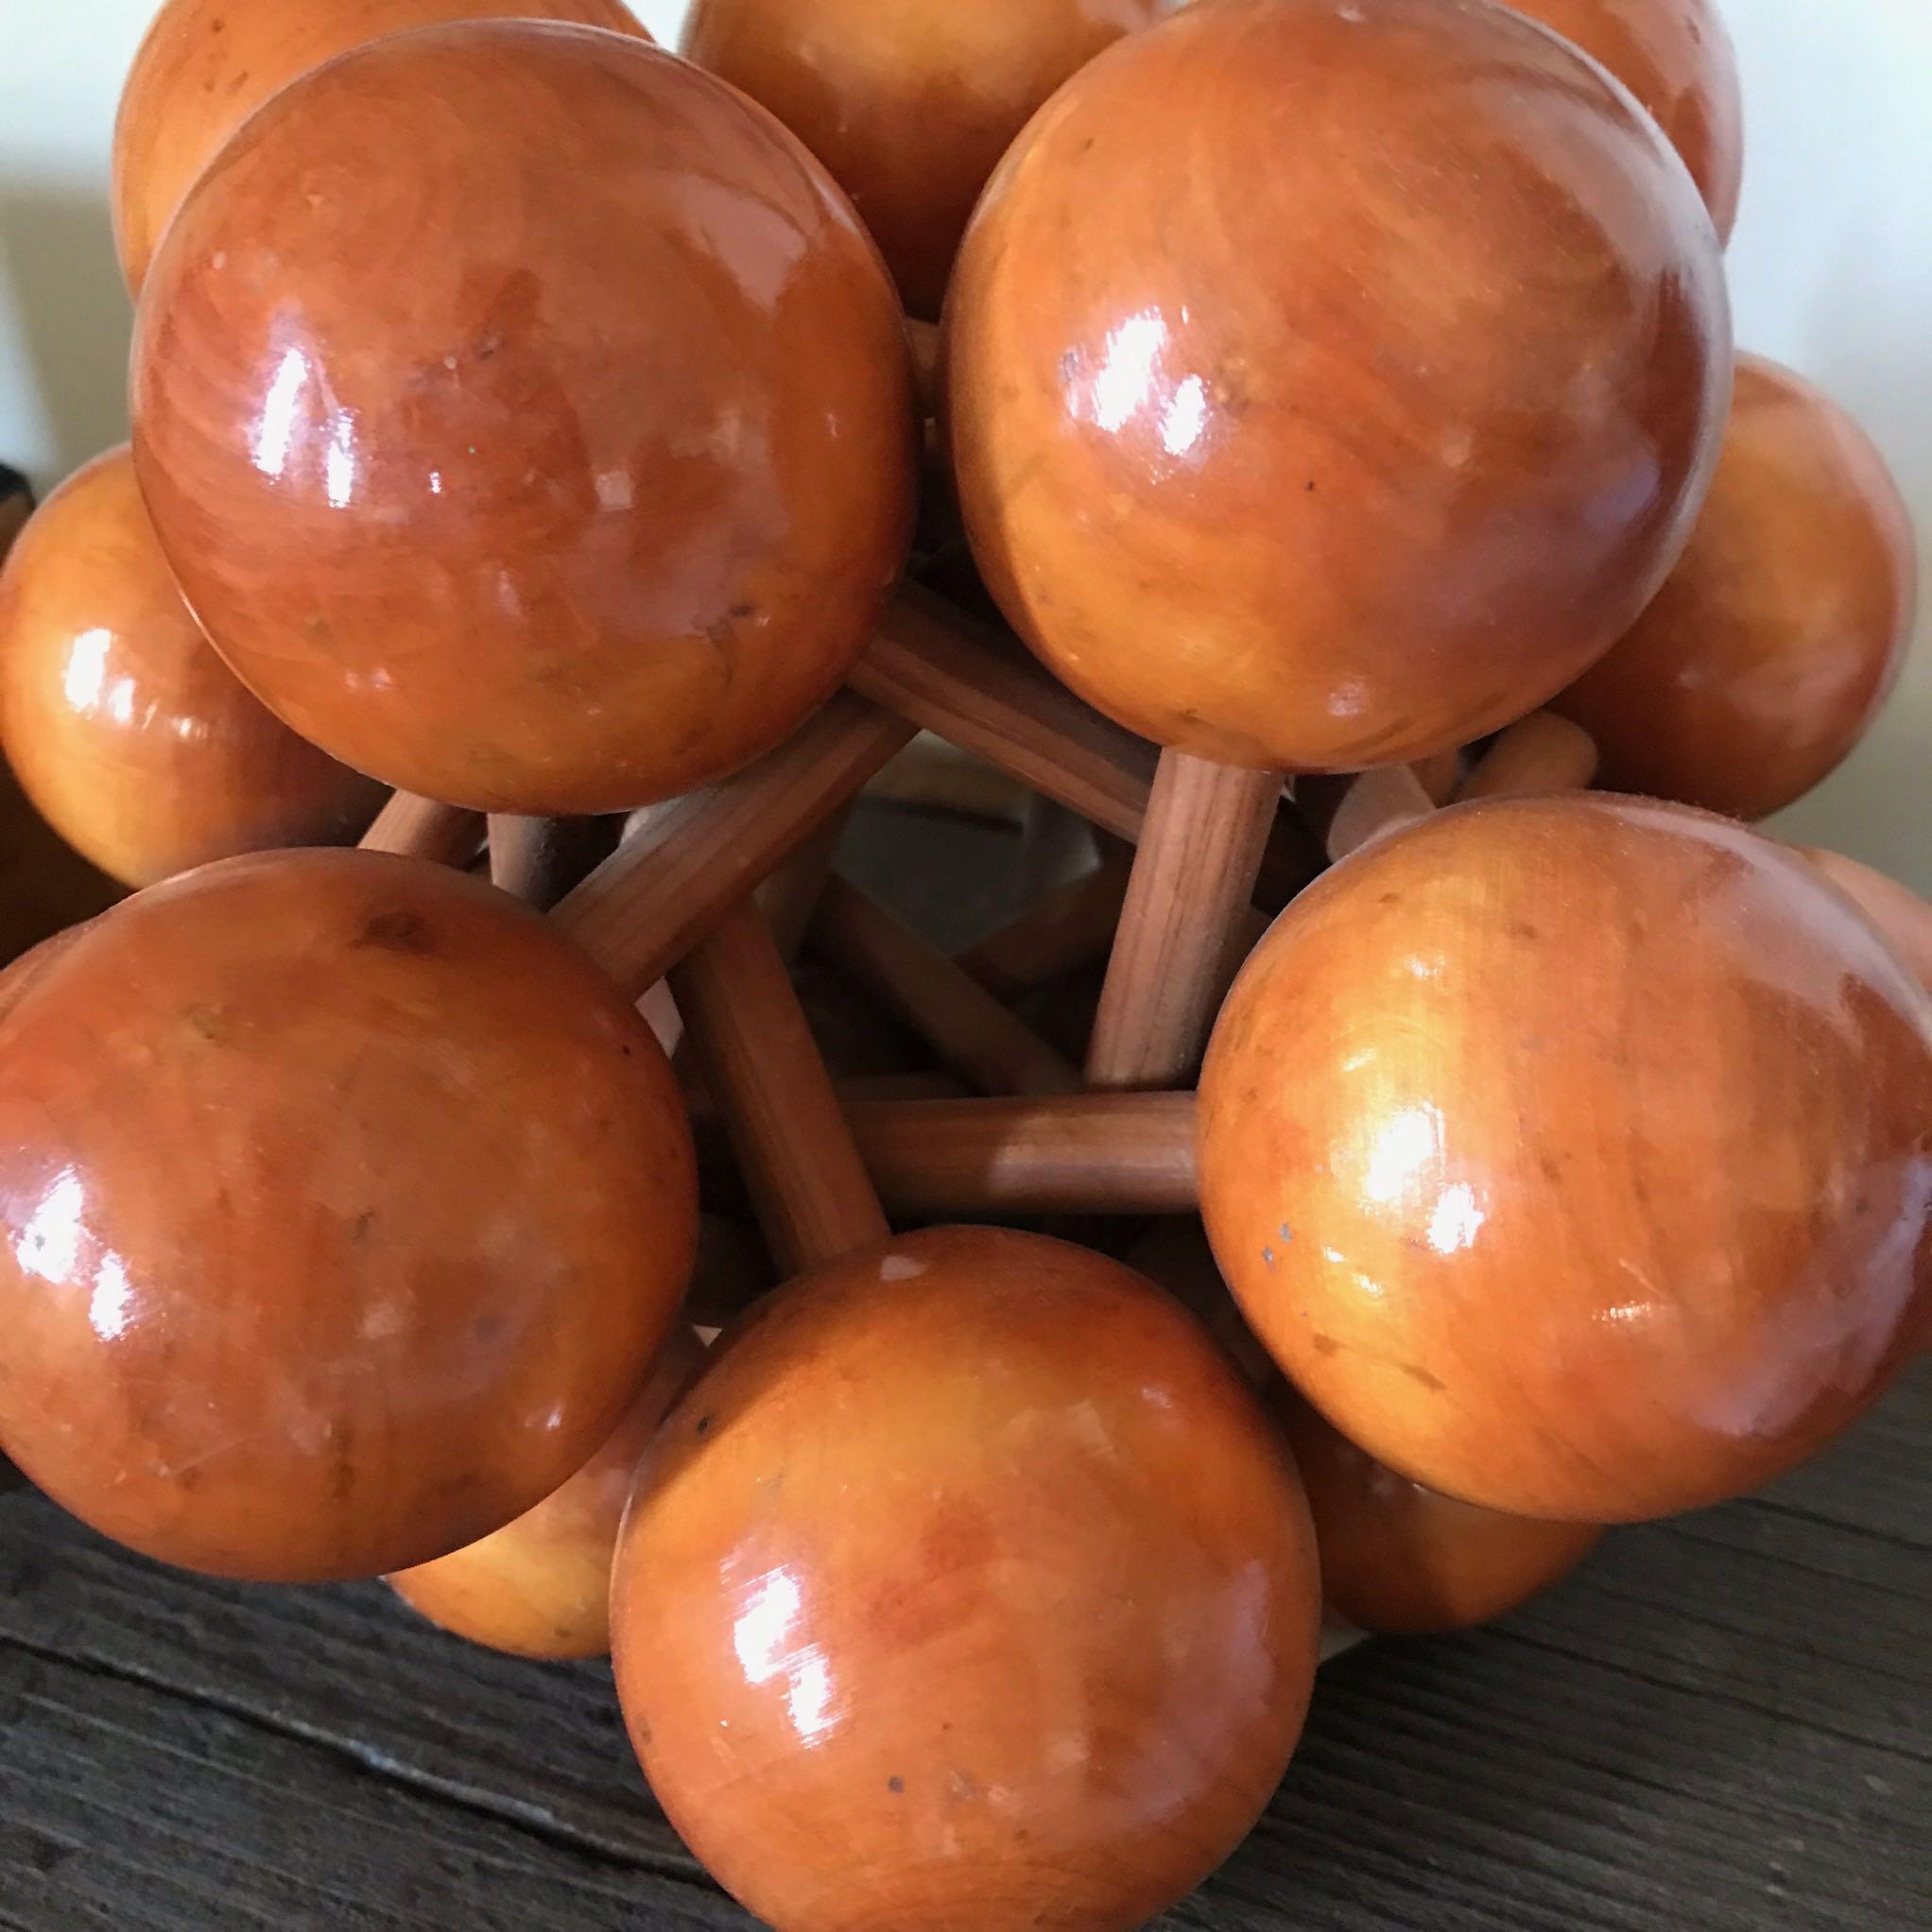 A wooden sculpture of balls.